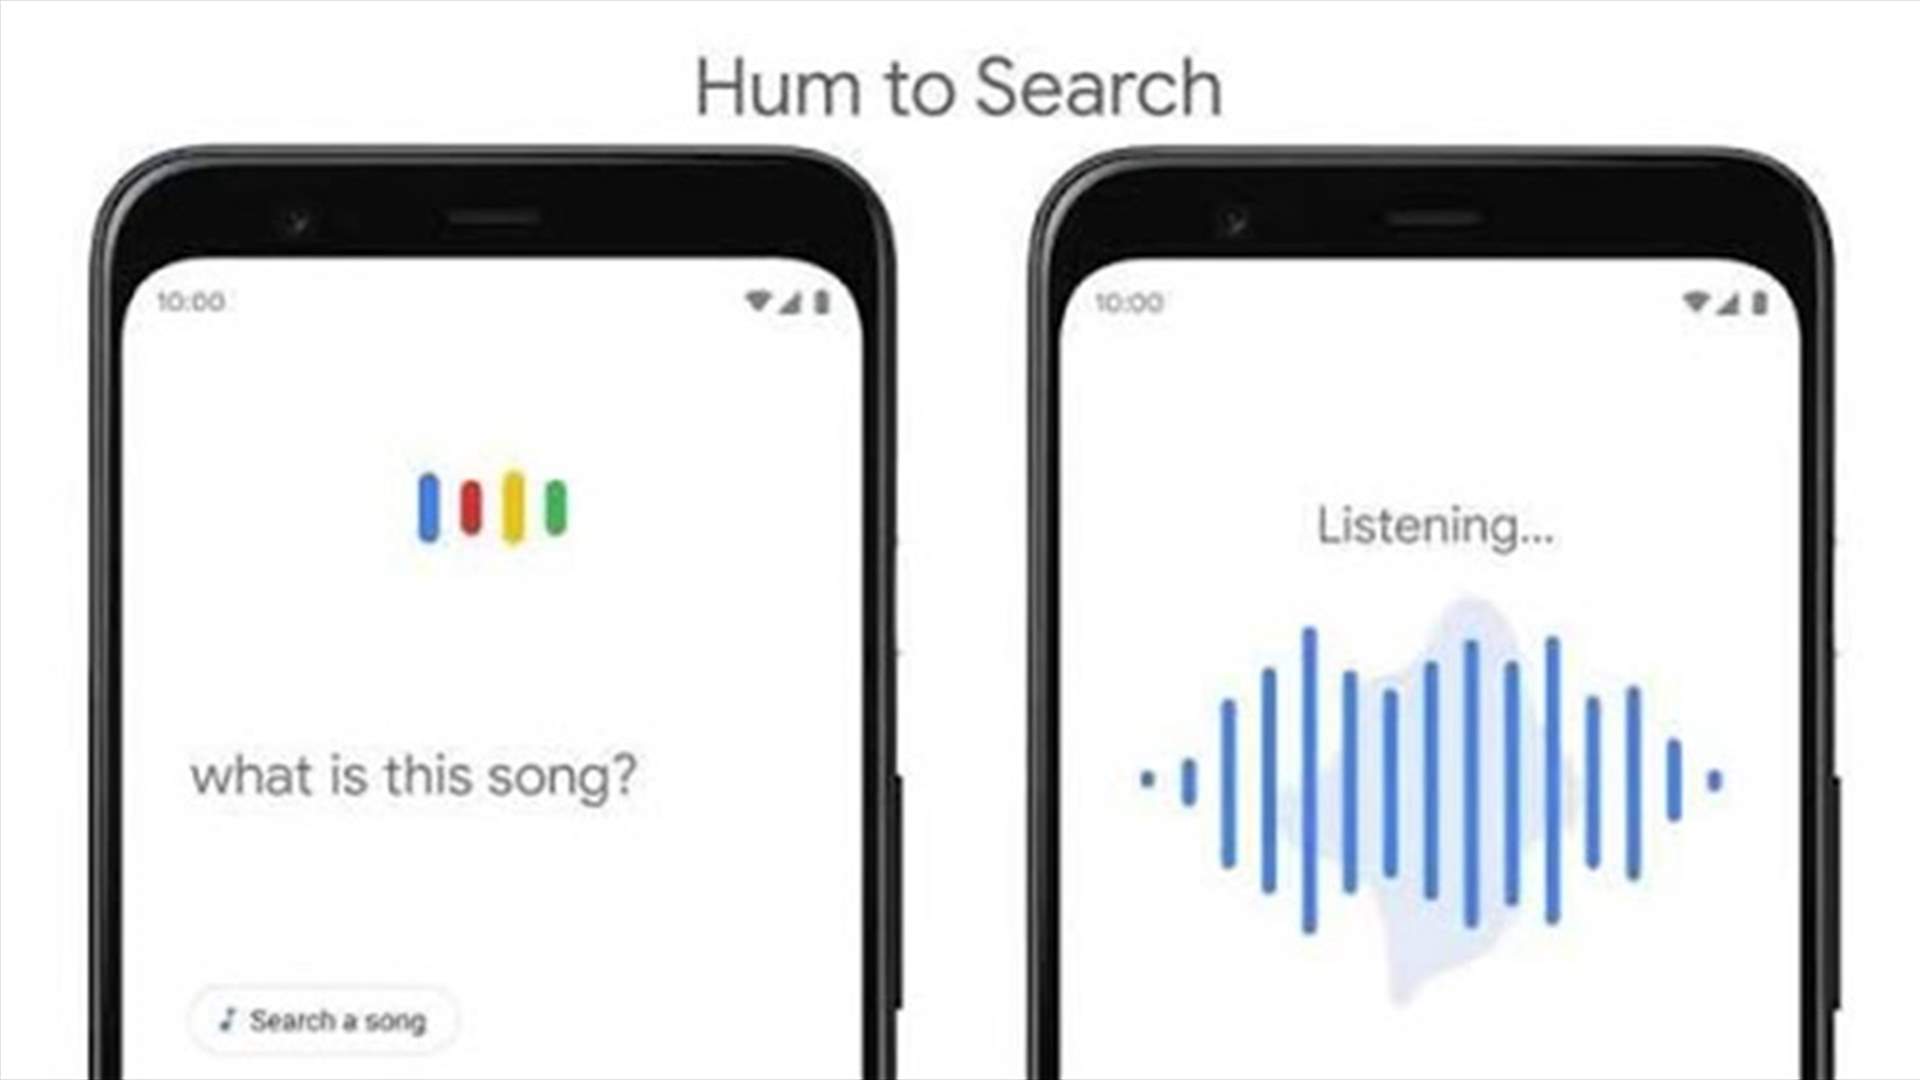 غوغل تكشف عن ميزة جديدة للتعرّف على الأغنية العالقة في ذهنك... كيف تعمل؟ (فيديو)